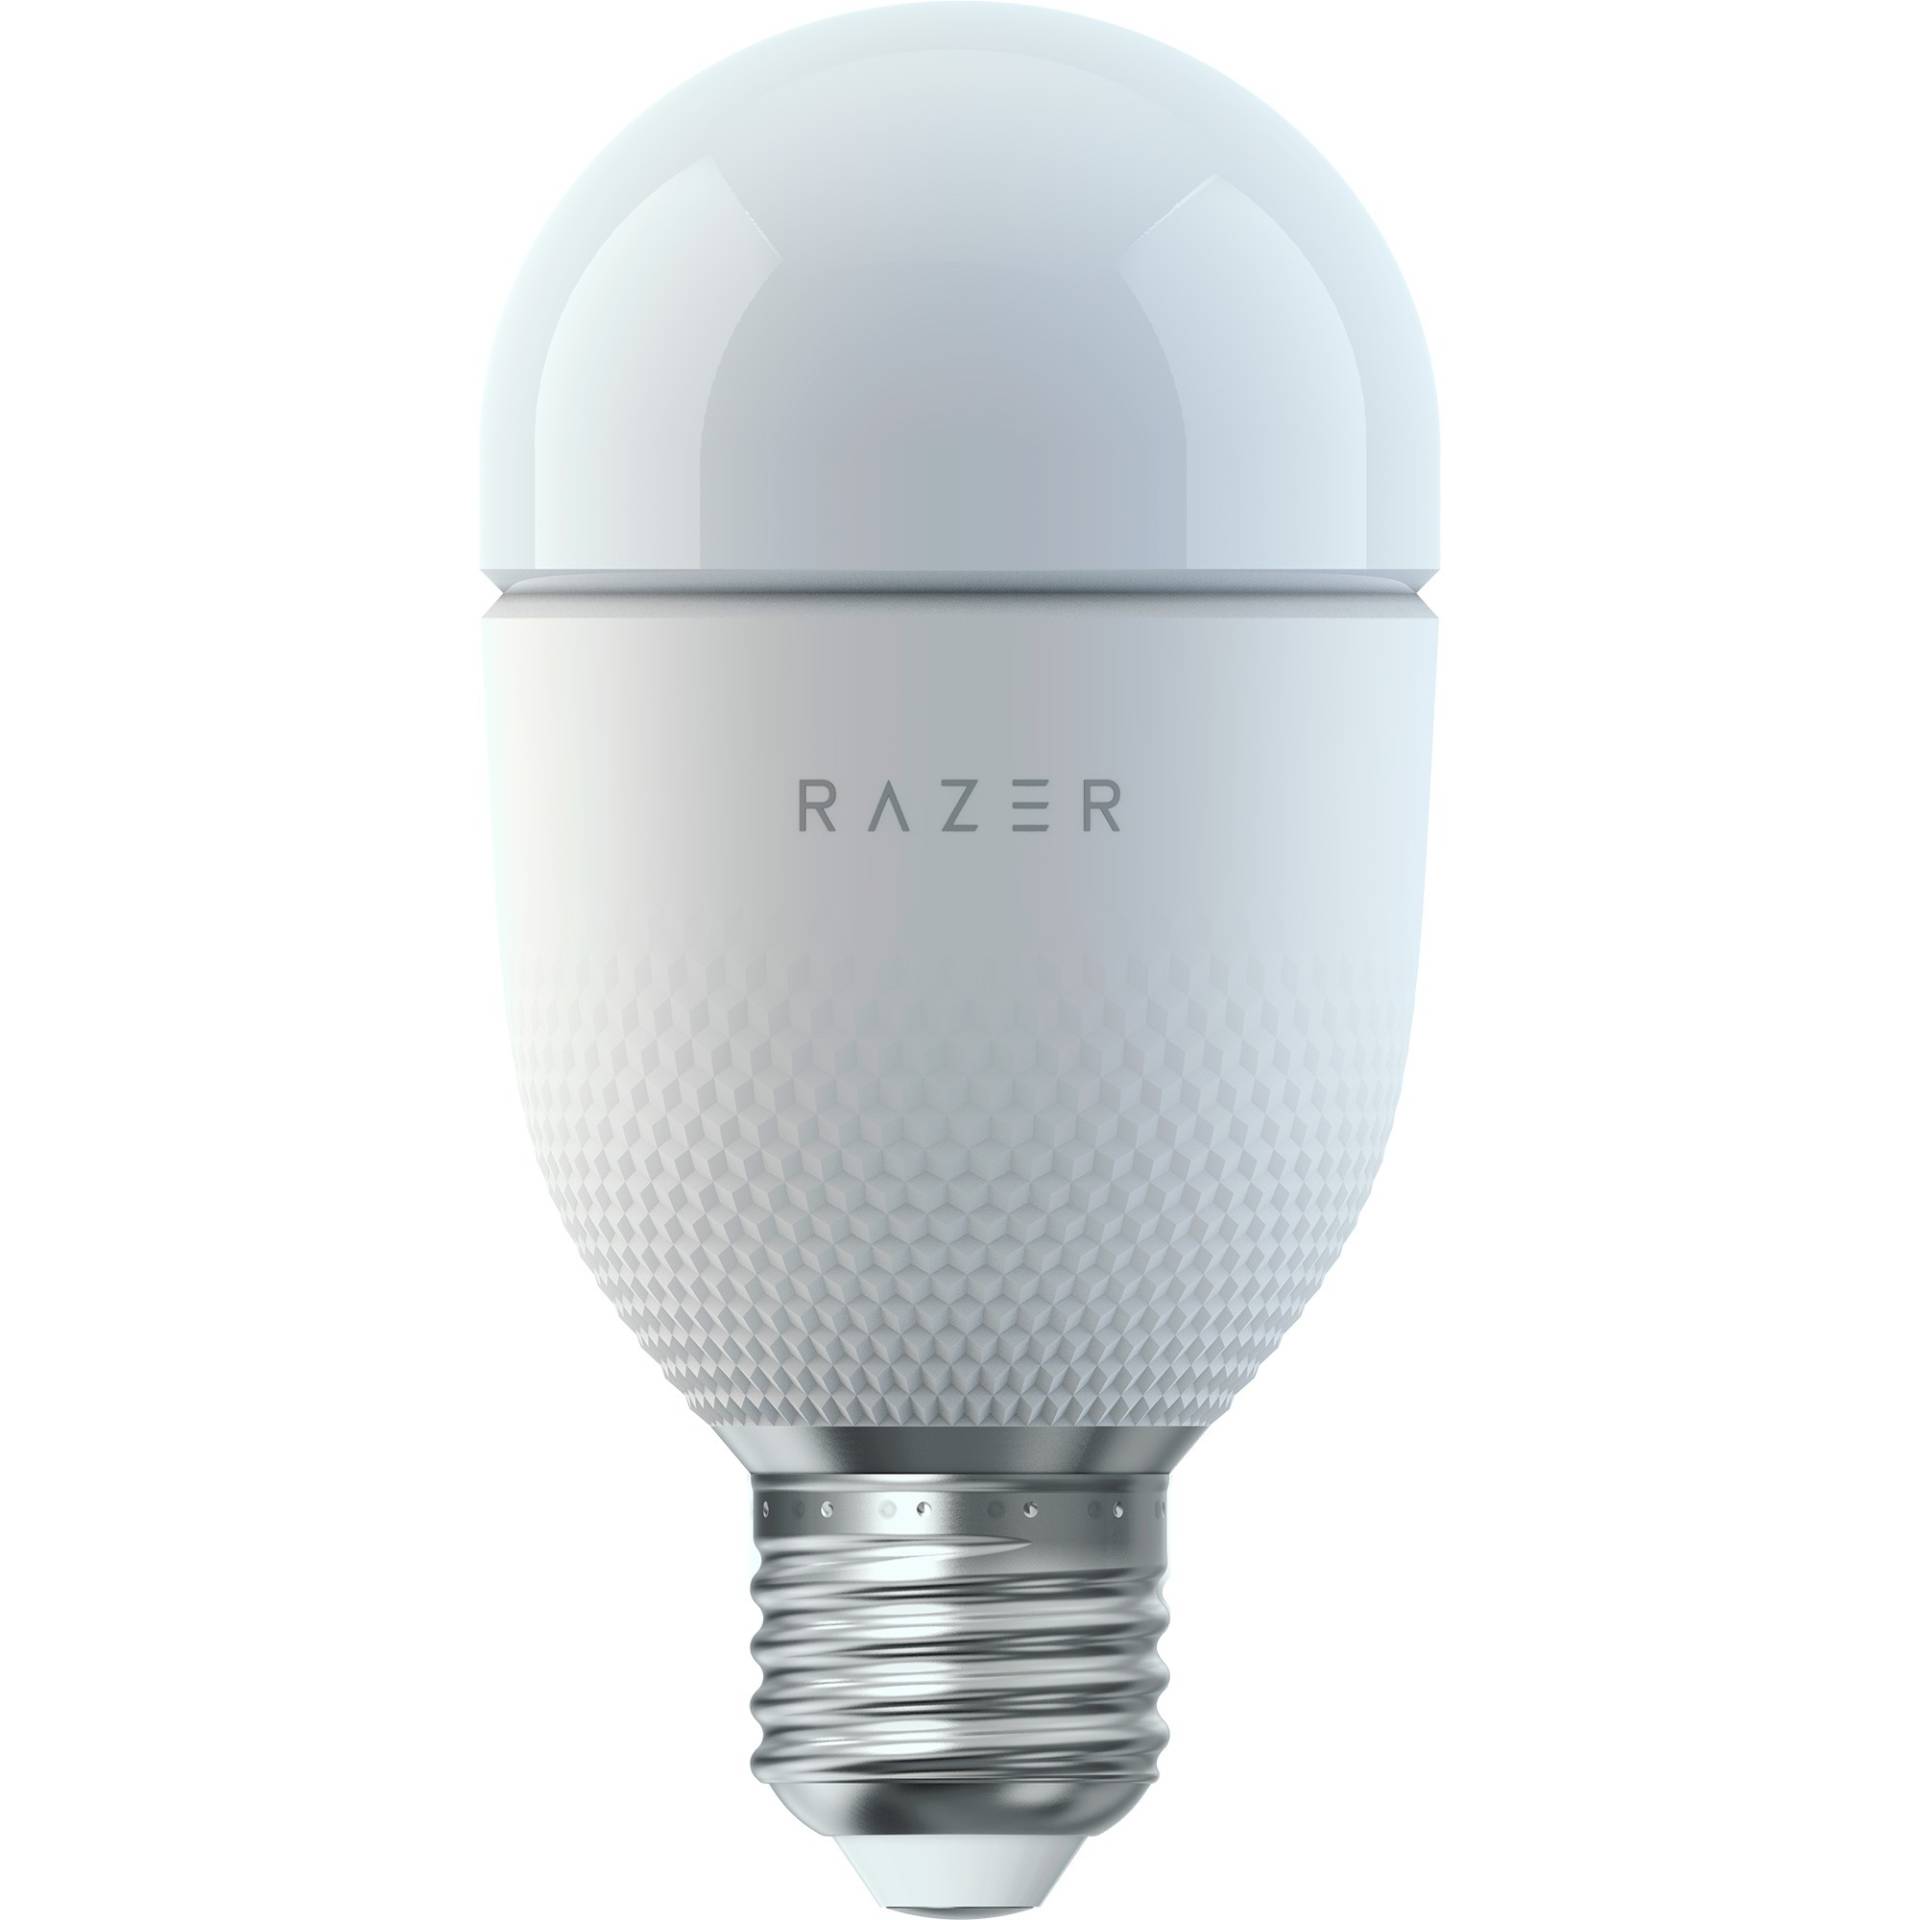 Aether Smart-Glühbirne, LED-Lampe von Razer